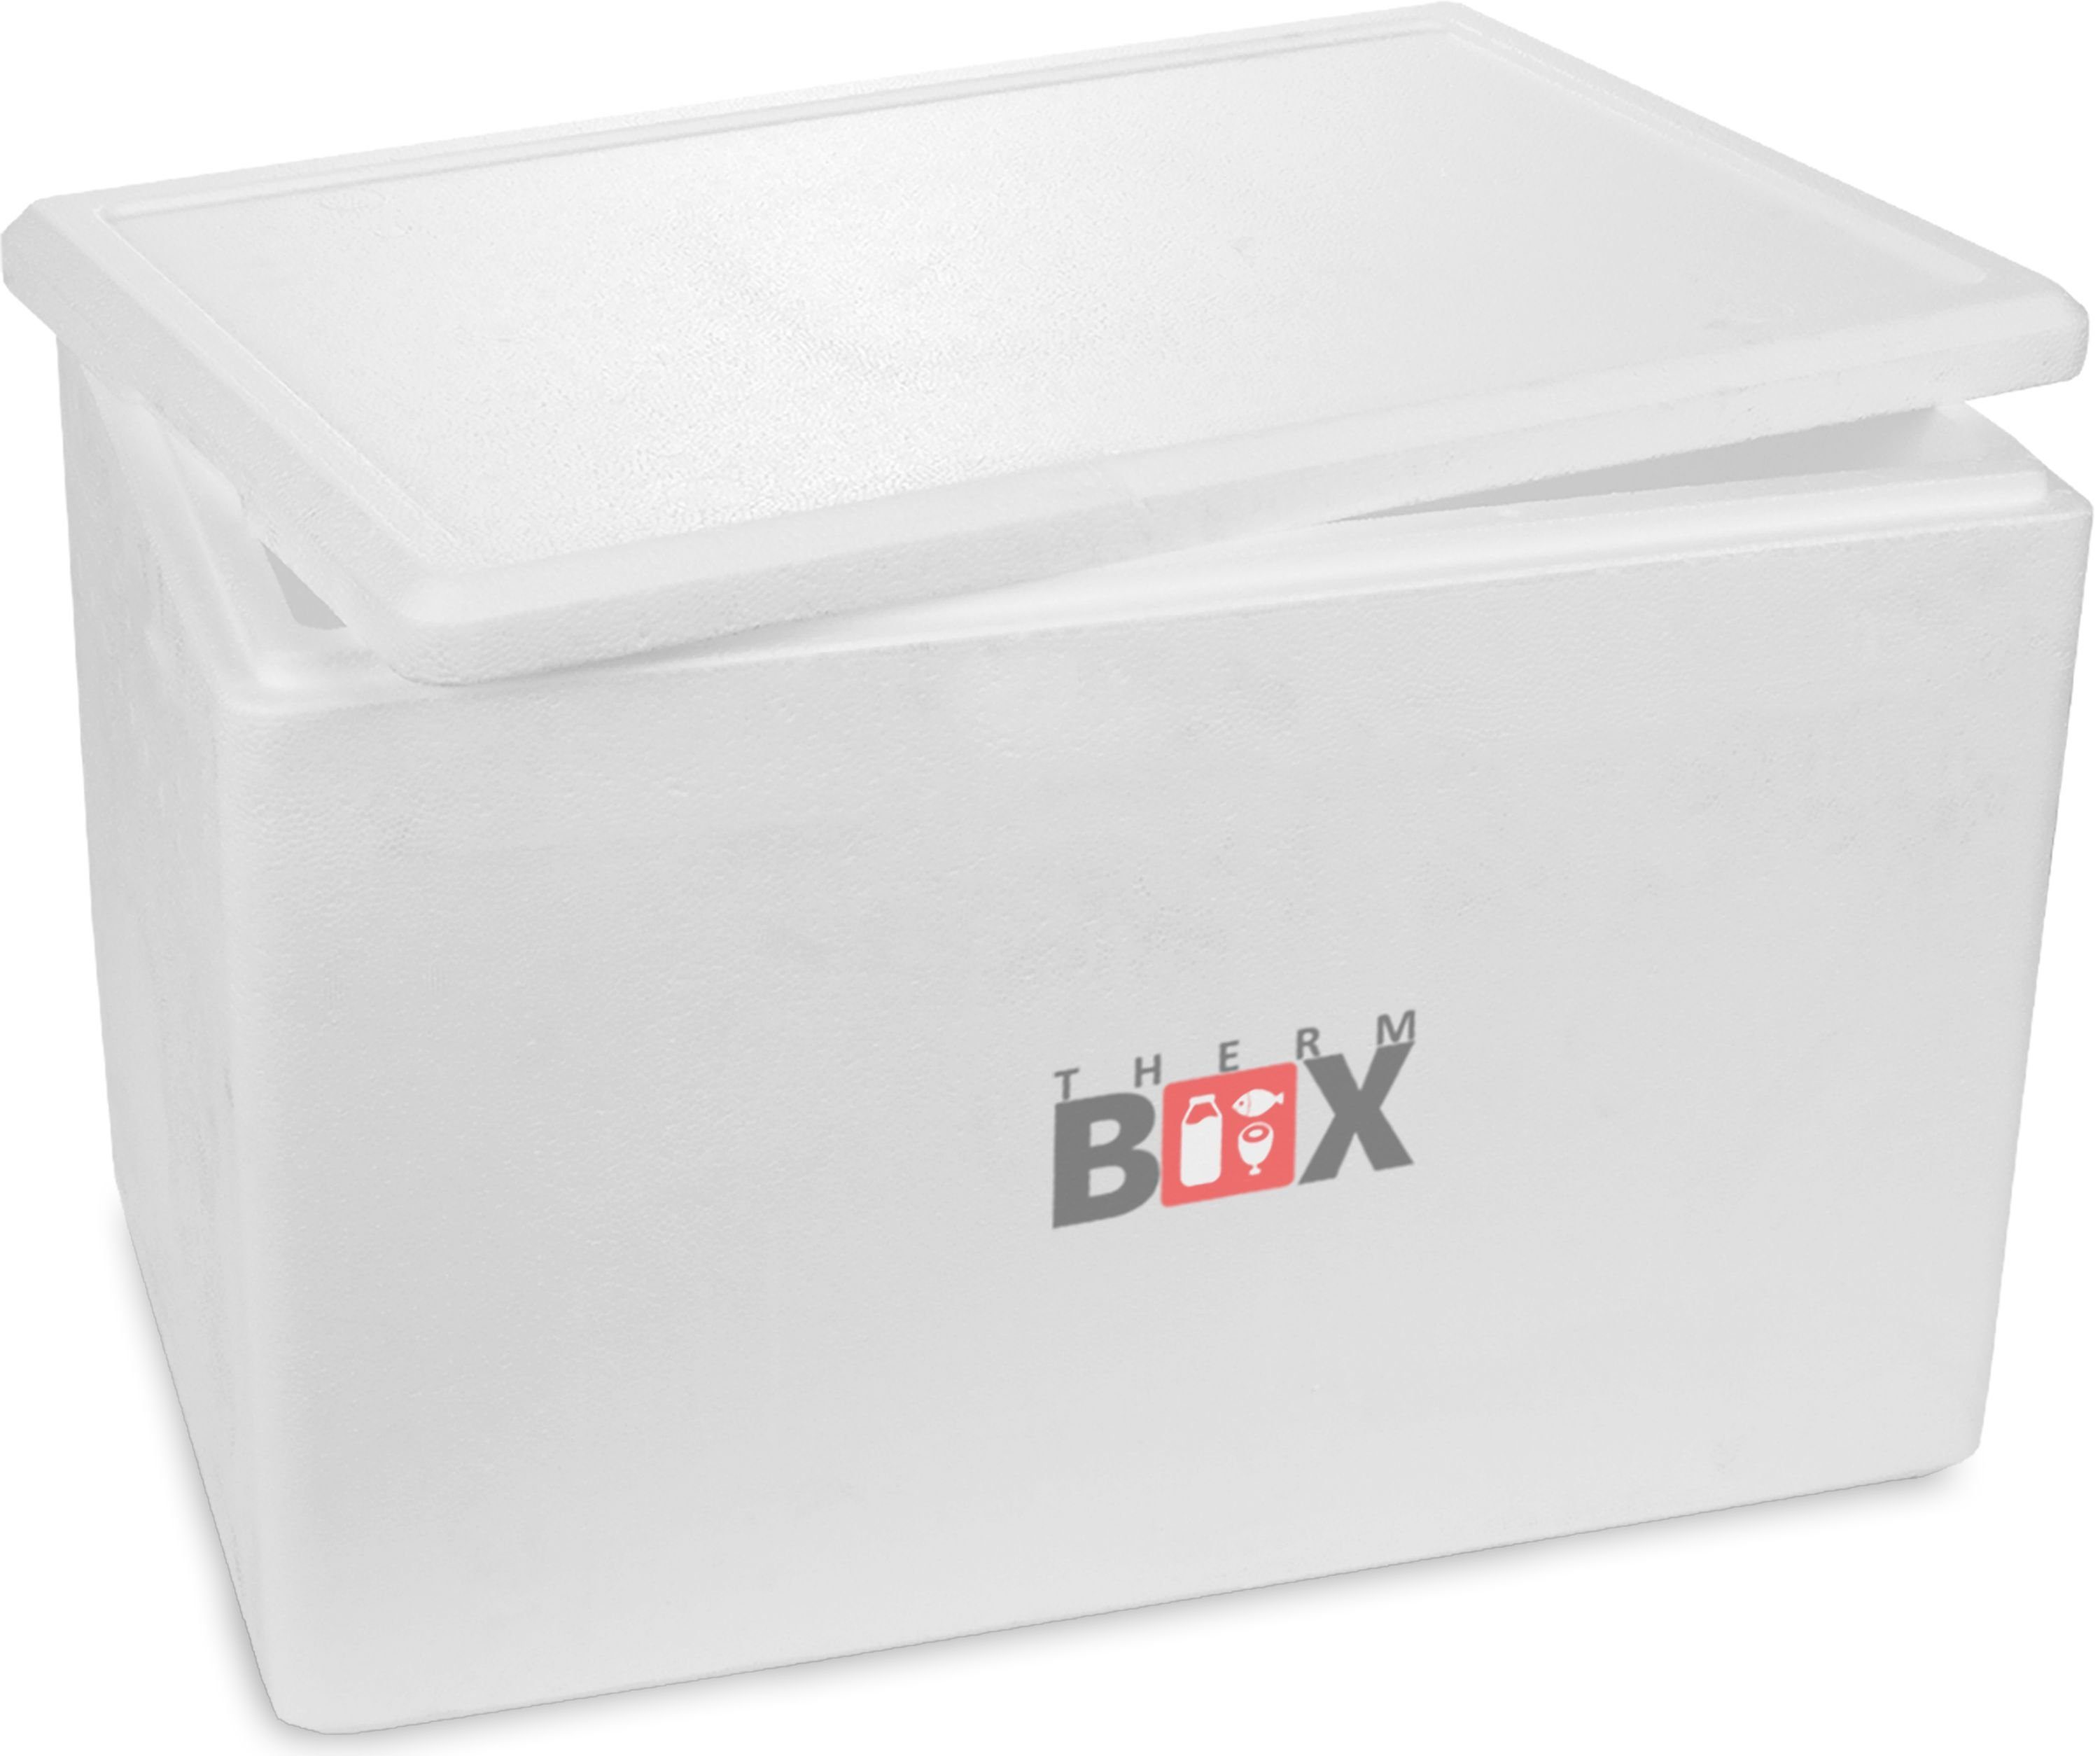 THERM-BOX Thermobehälter Styroporbox 61W Innen: 53x33x34cm Wand: 3cm 61,5L, Styropor-Verdichtet, (1, 0-tlg., Box mit Deckel im Karton), Isolierbox Thermobox Kühlbox Warmhaltebox Wiederverwendbar